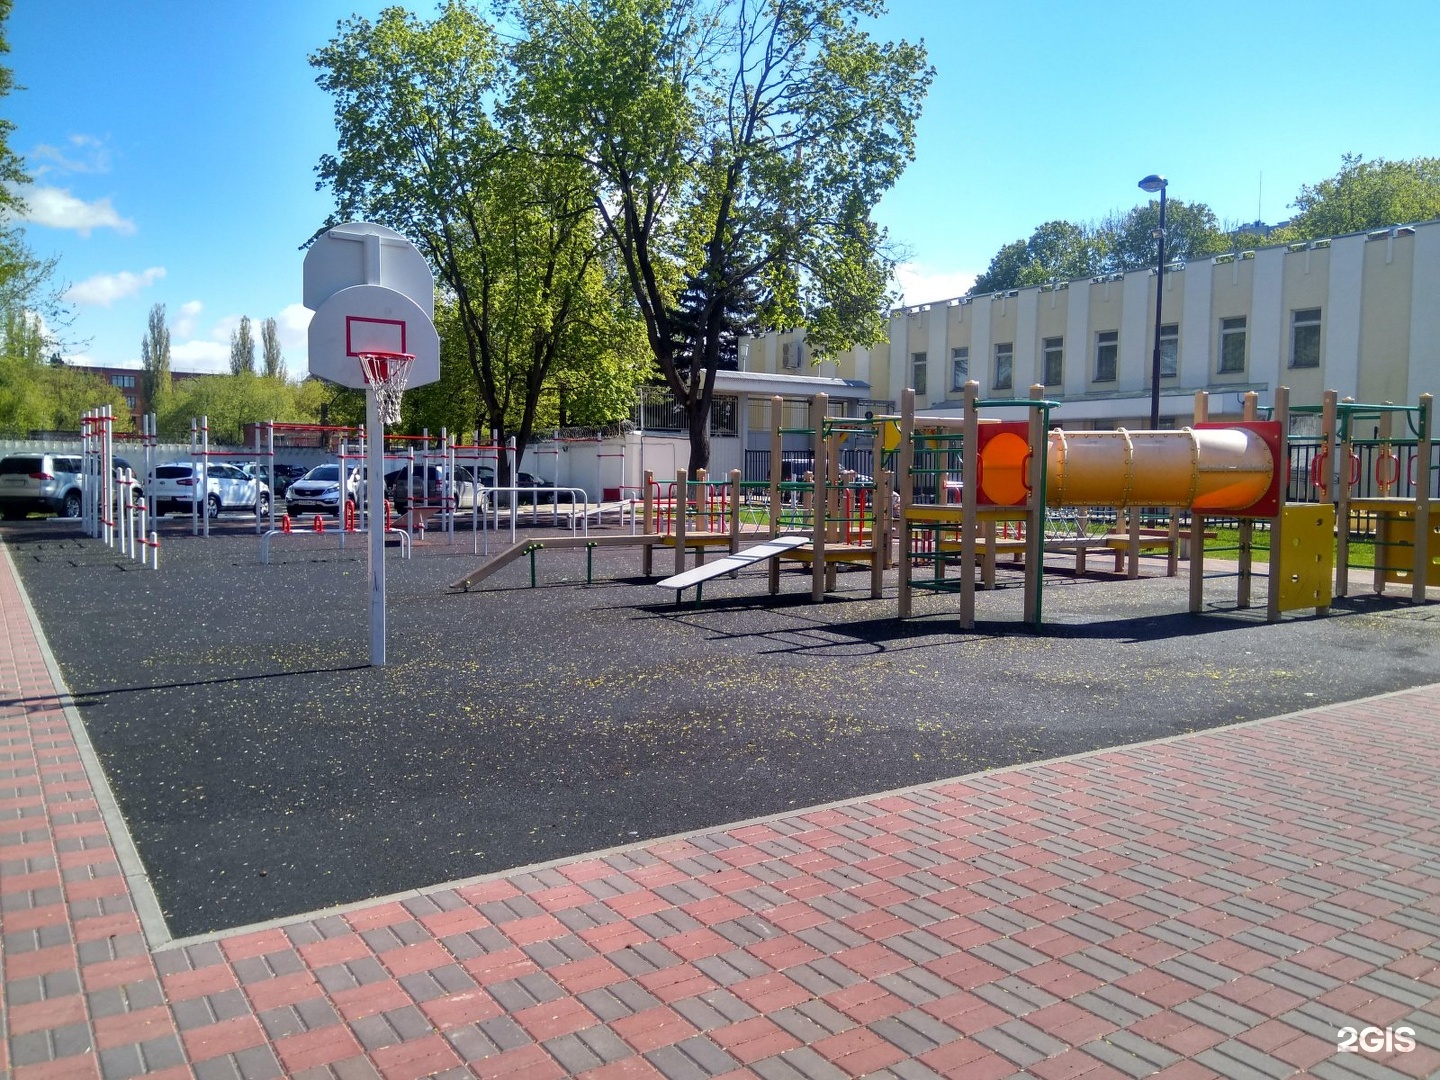 кремлевский парк вологда